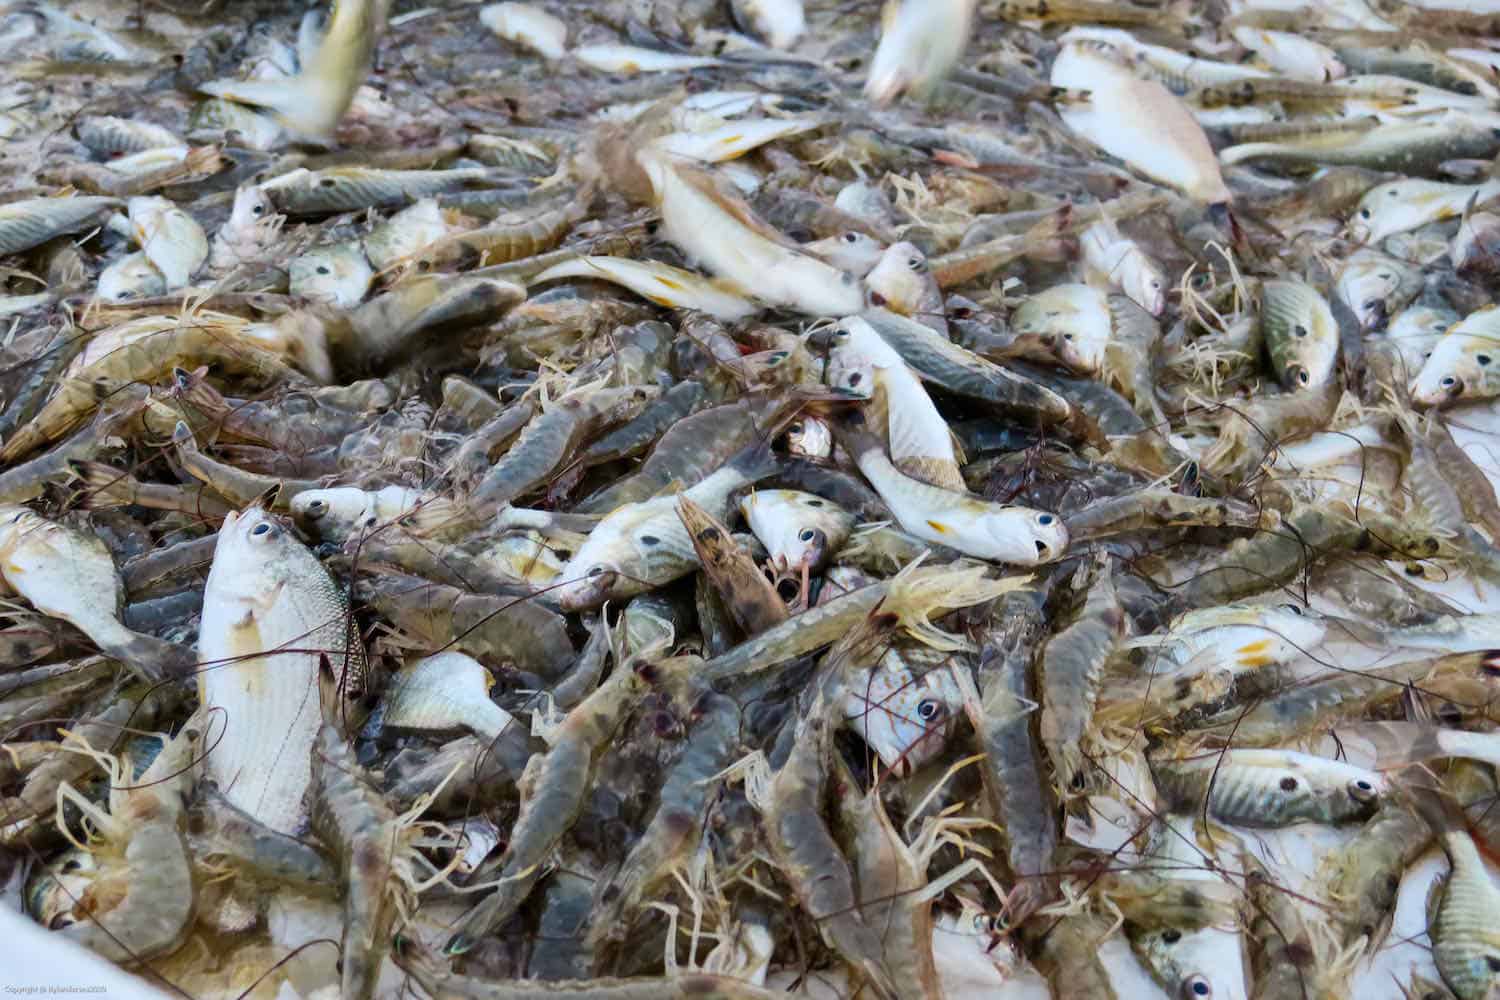 Pile of shrimp on a shrimp boat in North Carolina.